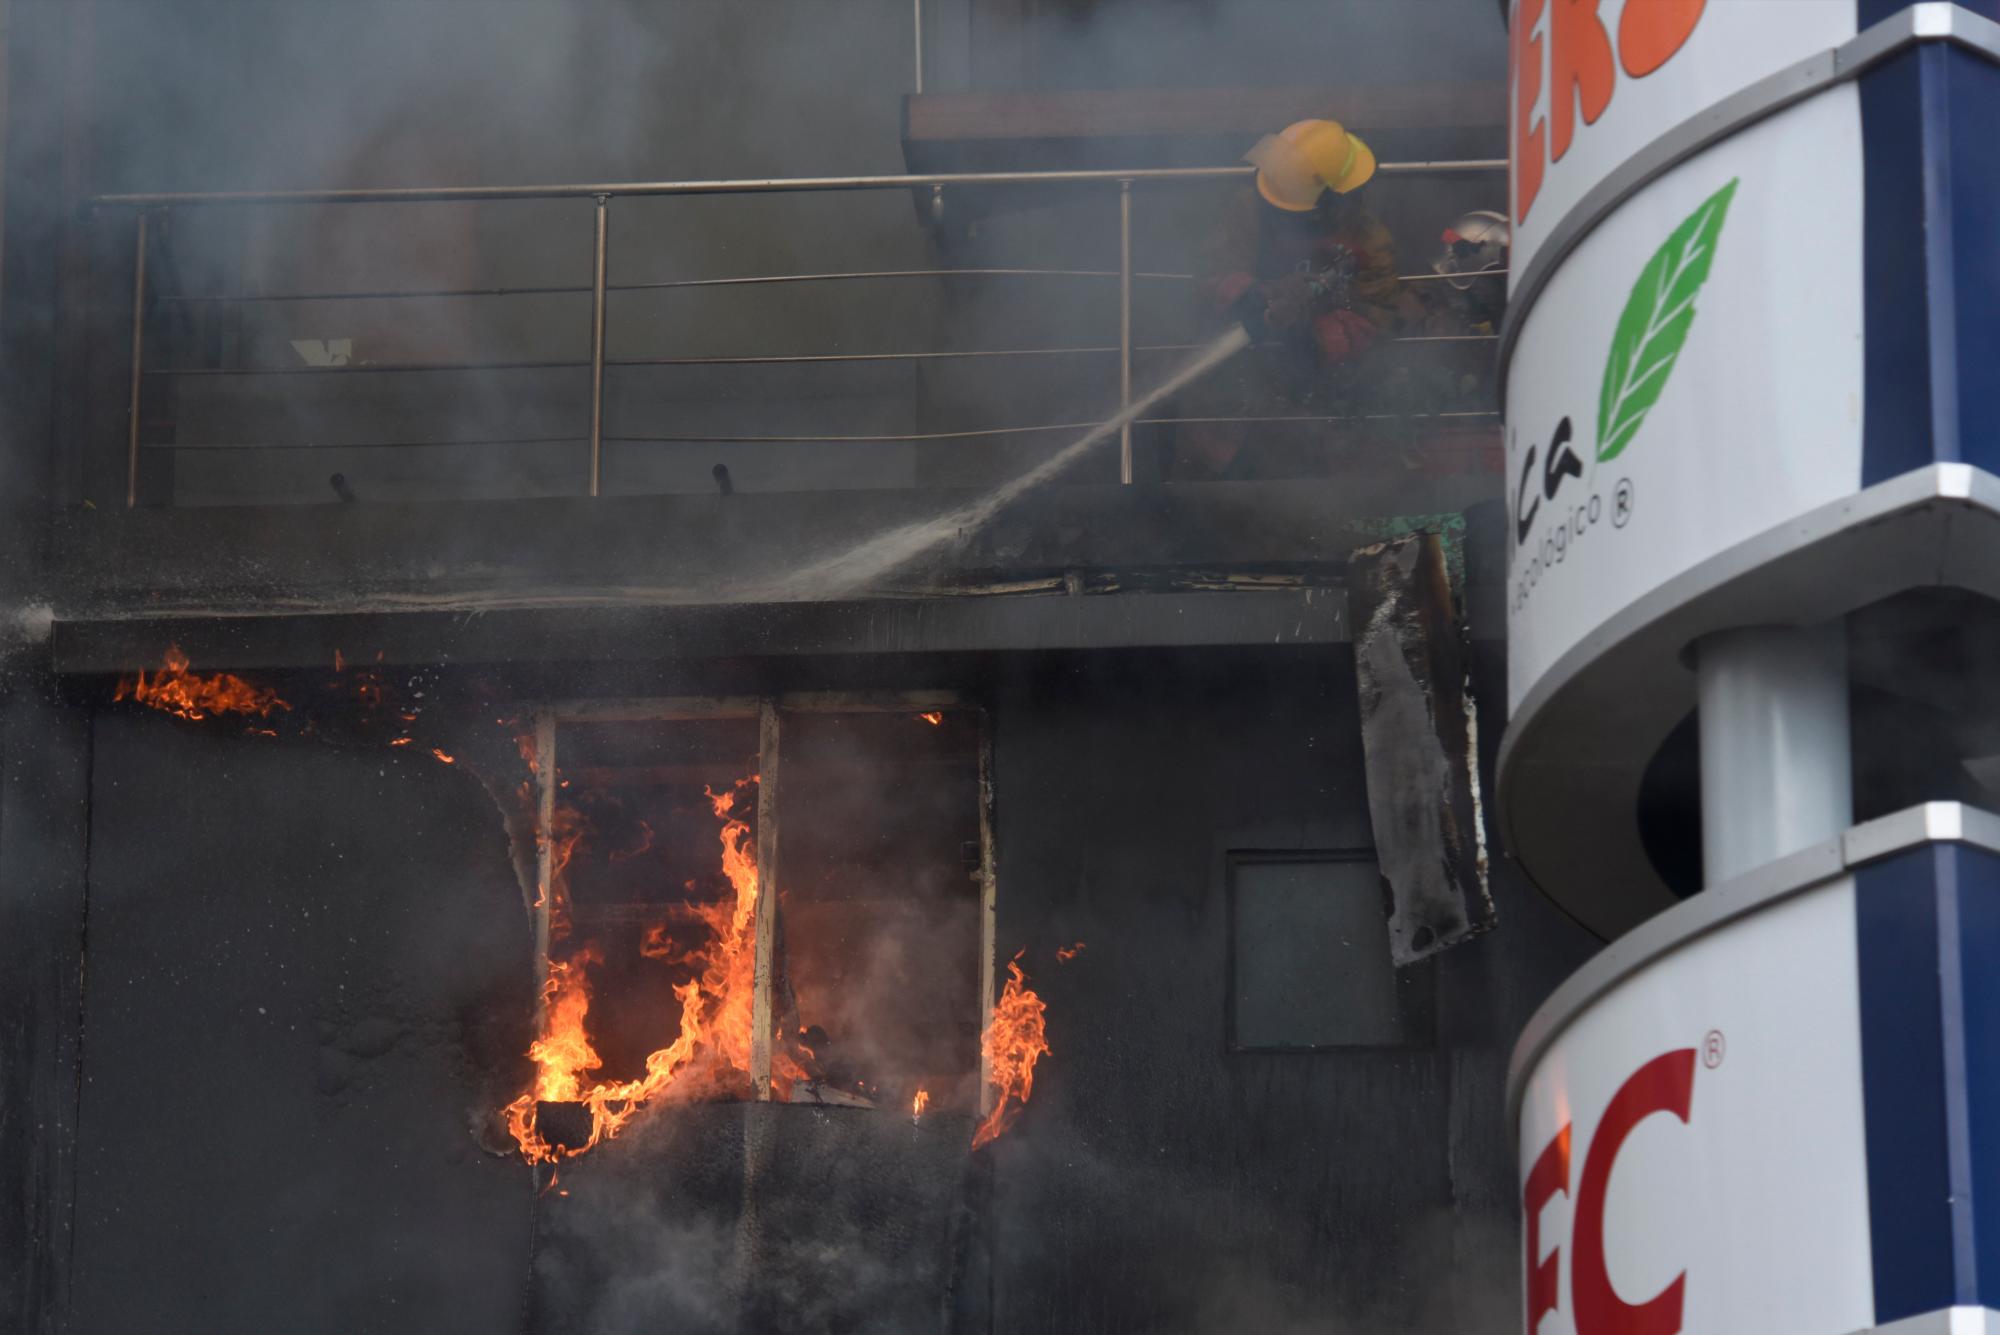 El incendio en la Torre Acrópolis comenzó alrededor de las 3:50 de la tarde y afectó en el segundo piso a un restaurante y bar, se propagó parcialmente en la primera planta y en la segunda, donde había productos inflamables. Martes 12 de marzo de 2019.